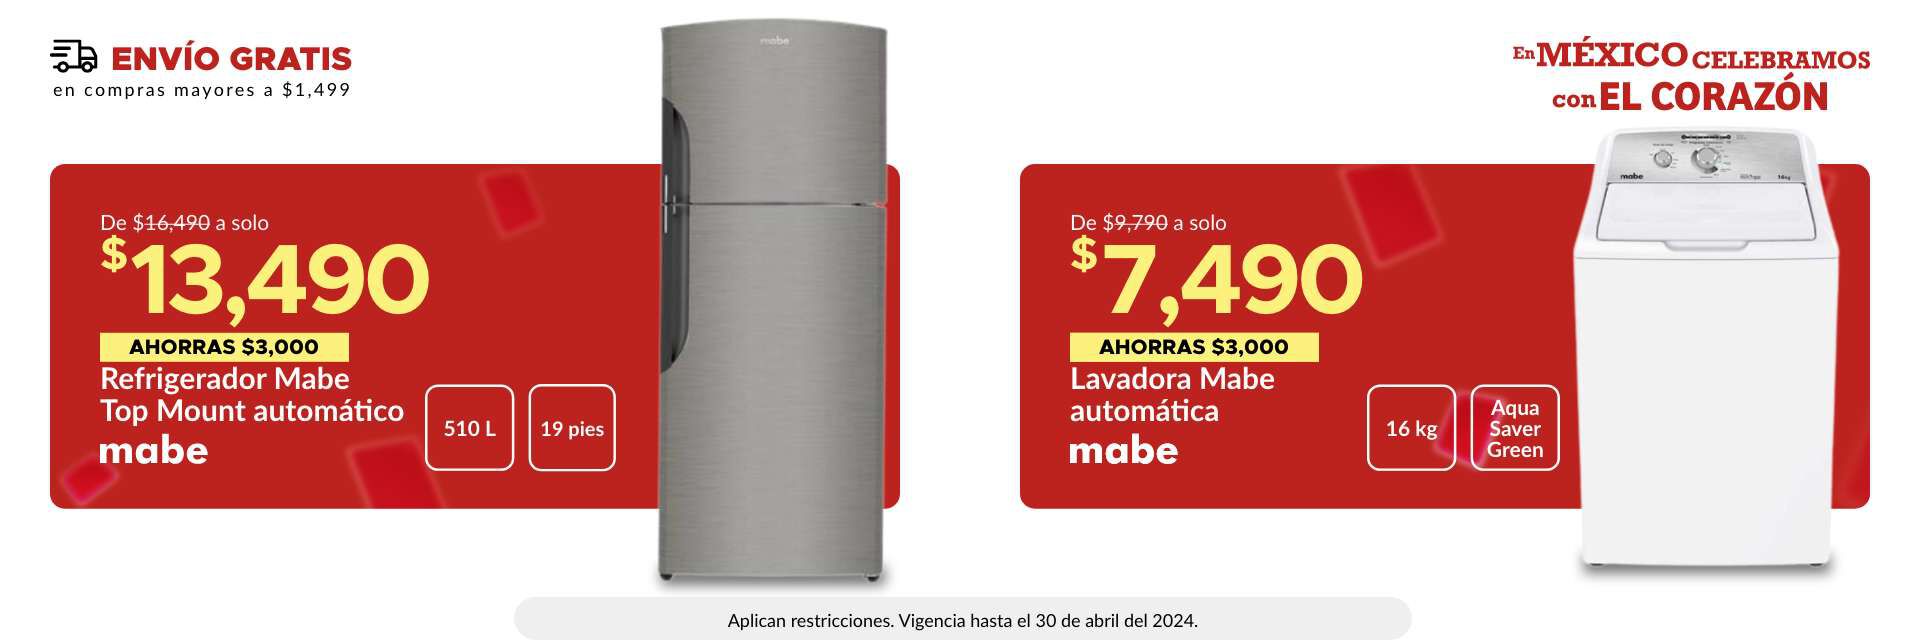 Lavadora automática Mabe a sólo $7,490